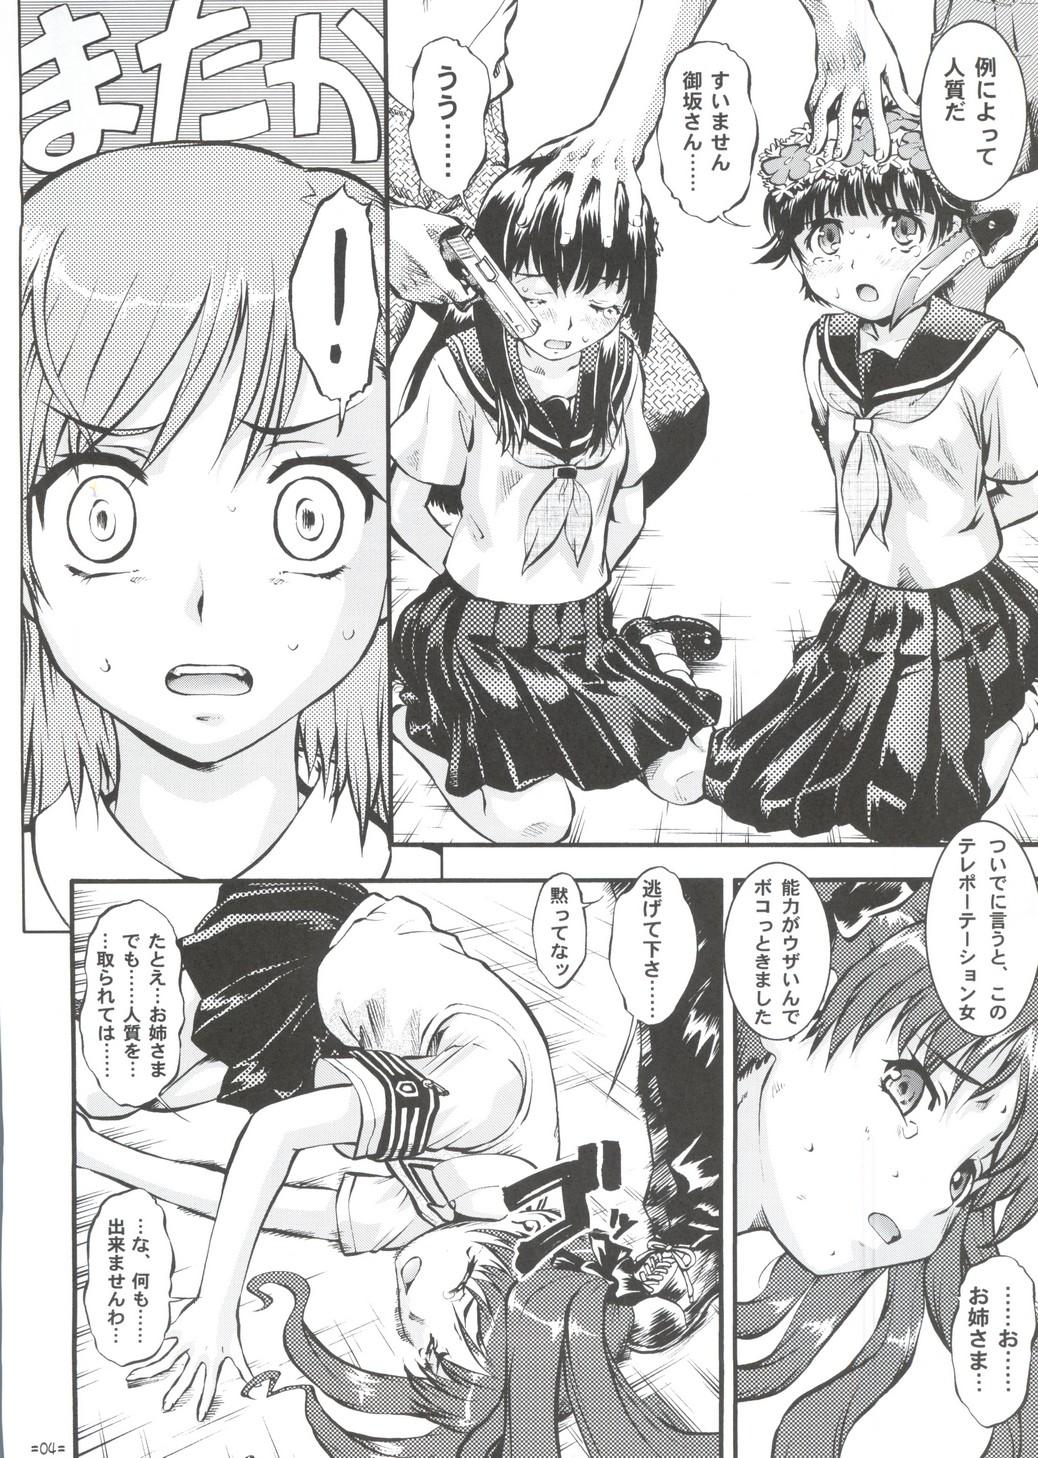 Com W Poron TO-R - Toaru kagaku no railgun Koihime musou Oral Sex Porn - Page 3